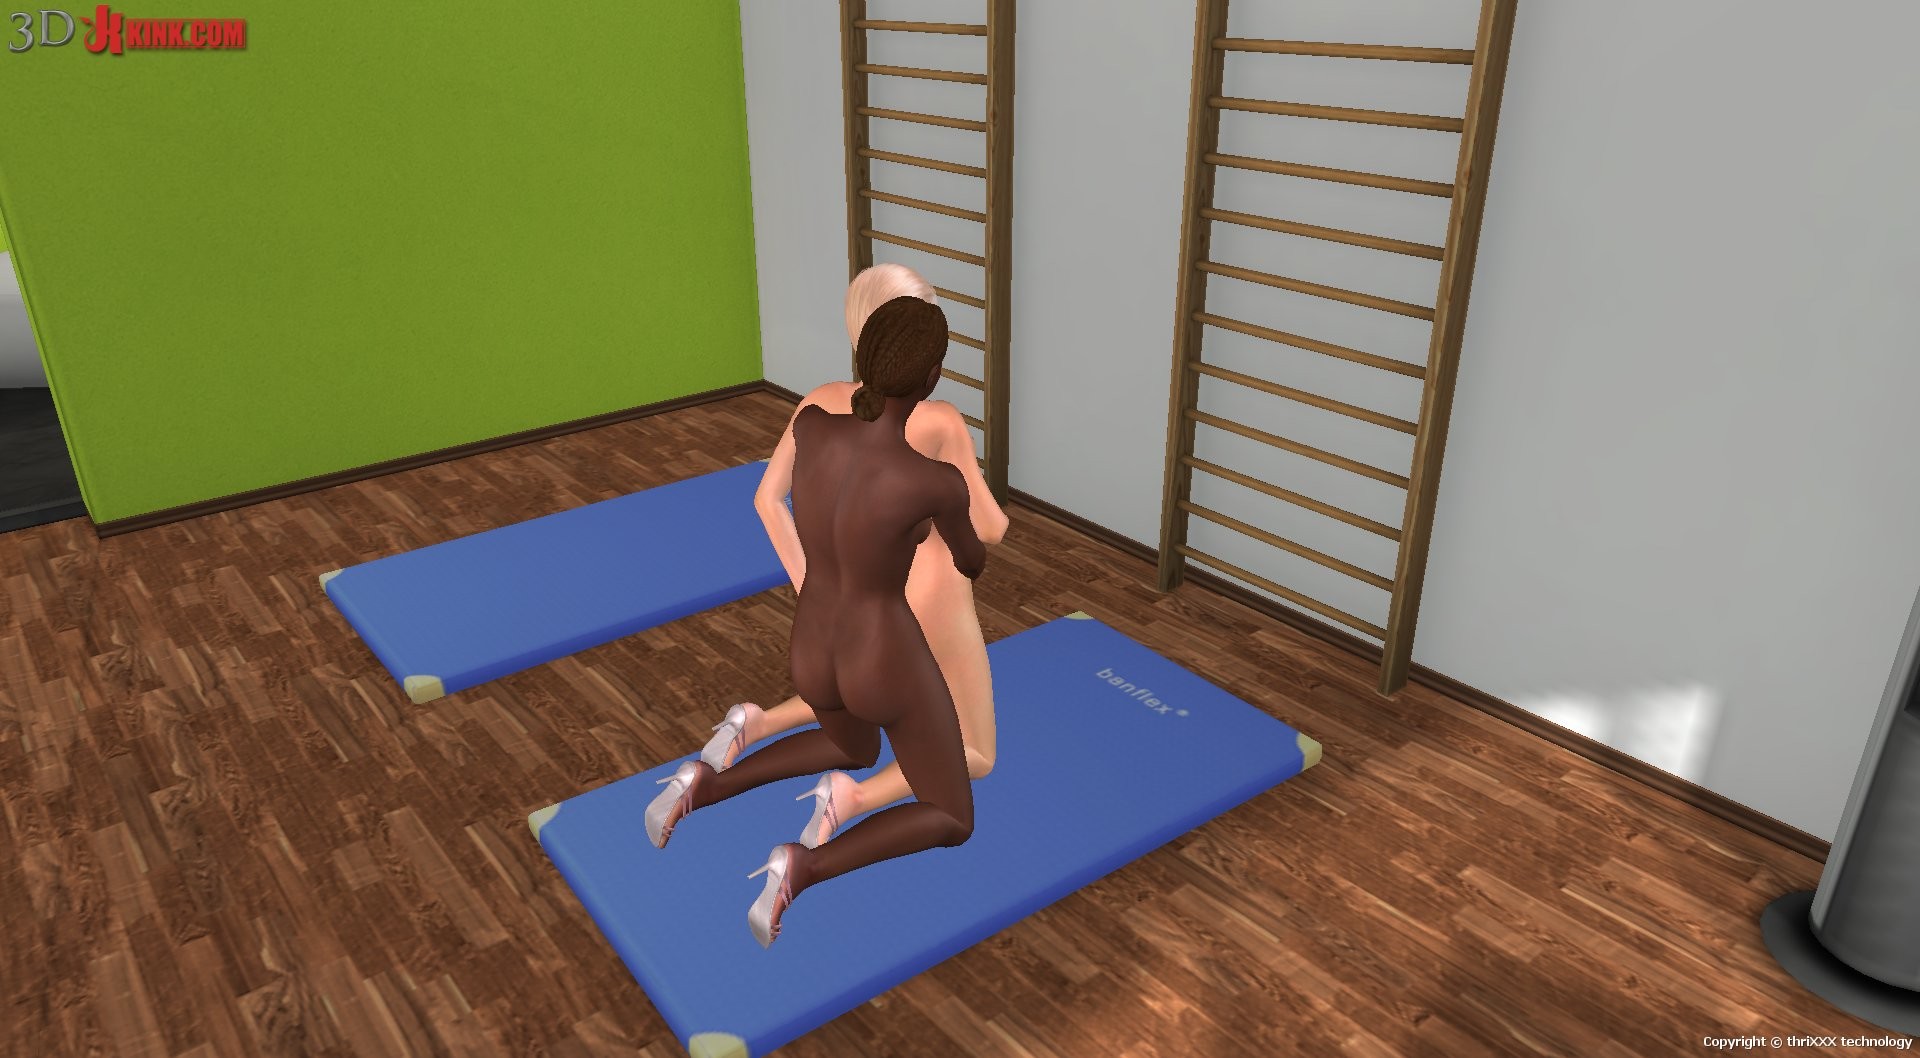 Une bonne action sexuelle bdsm créée dans un jeu de sexe virtuel fétichiste en 3D !
 #69357439